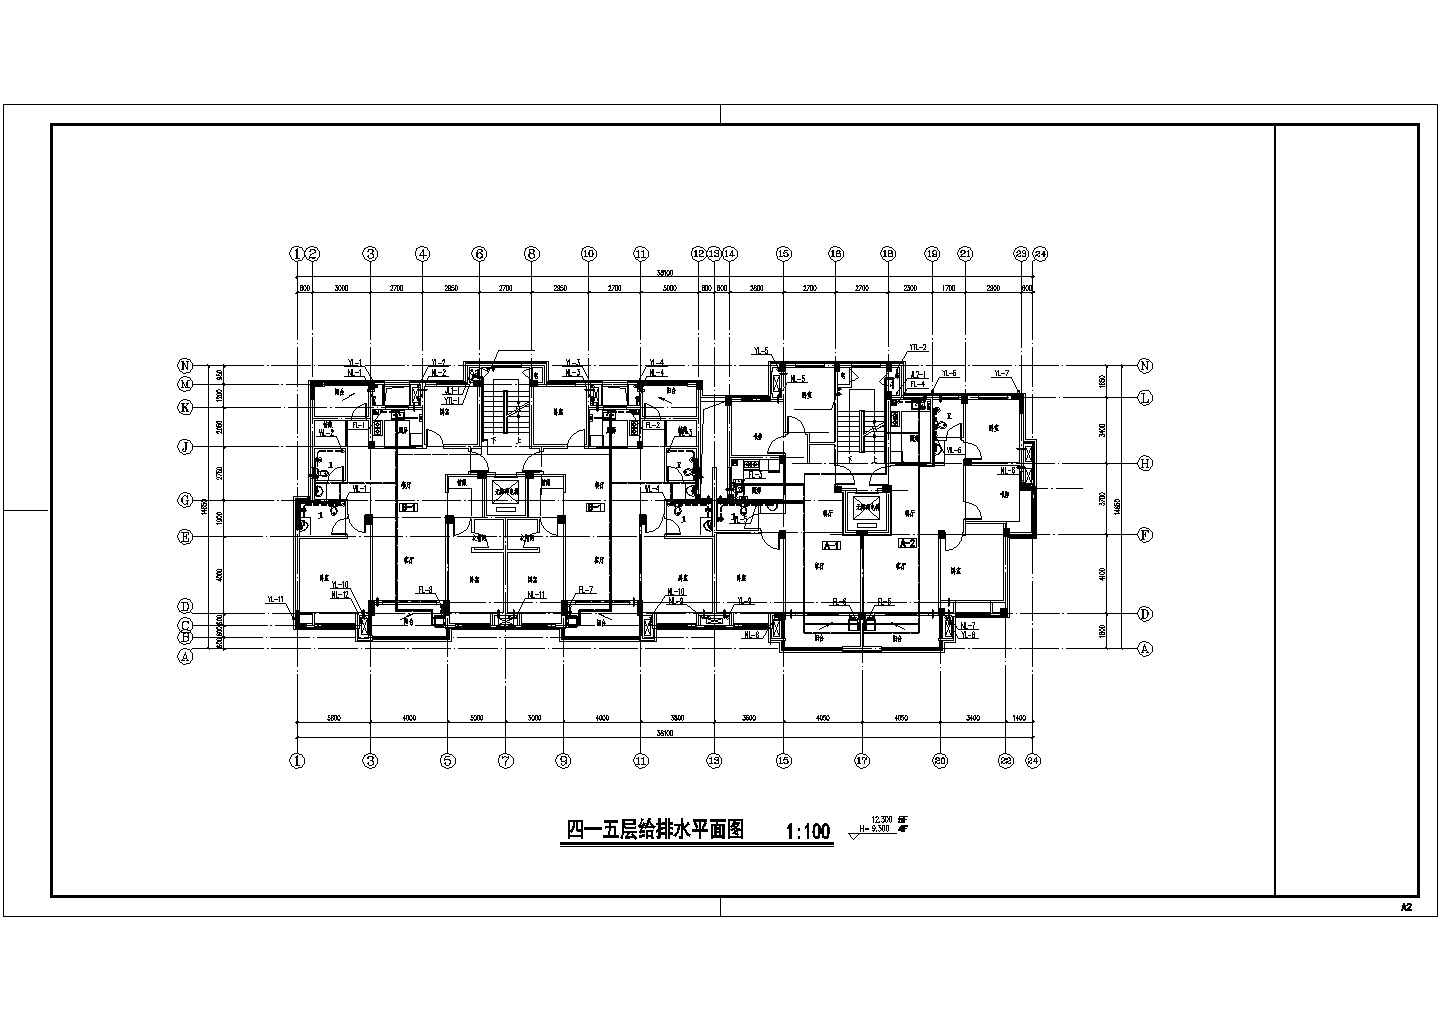 大连市御景城小区7层砖混结构住宅楼全套给排水平面设计CAD图纸